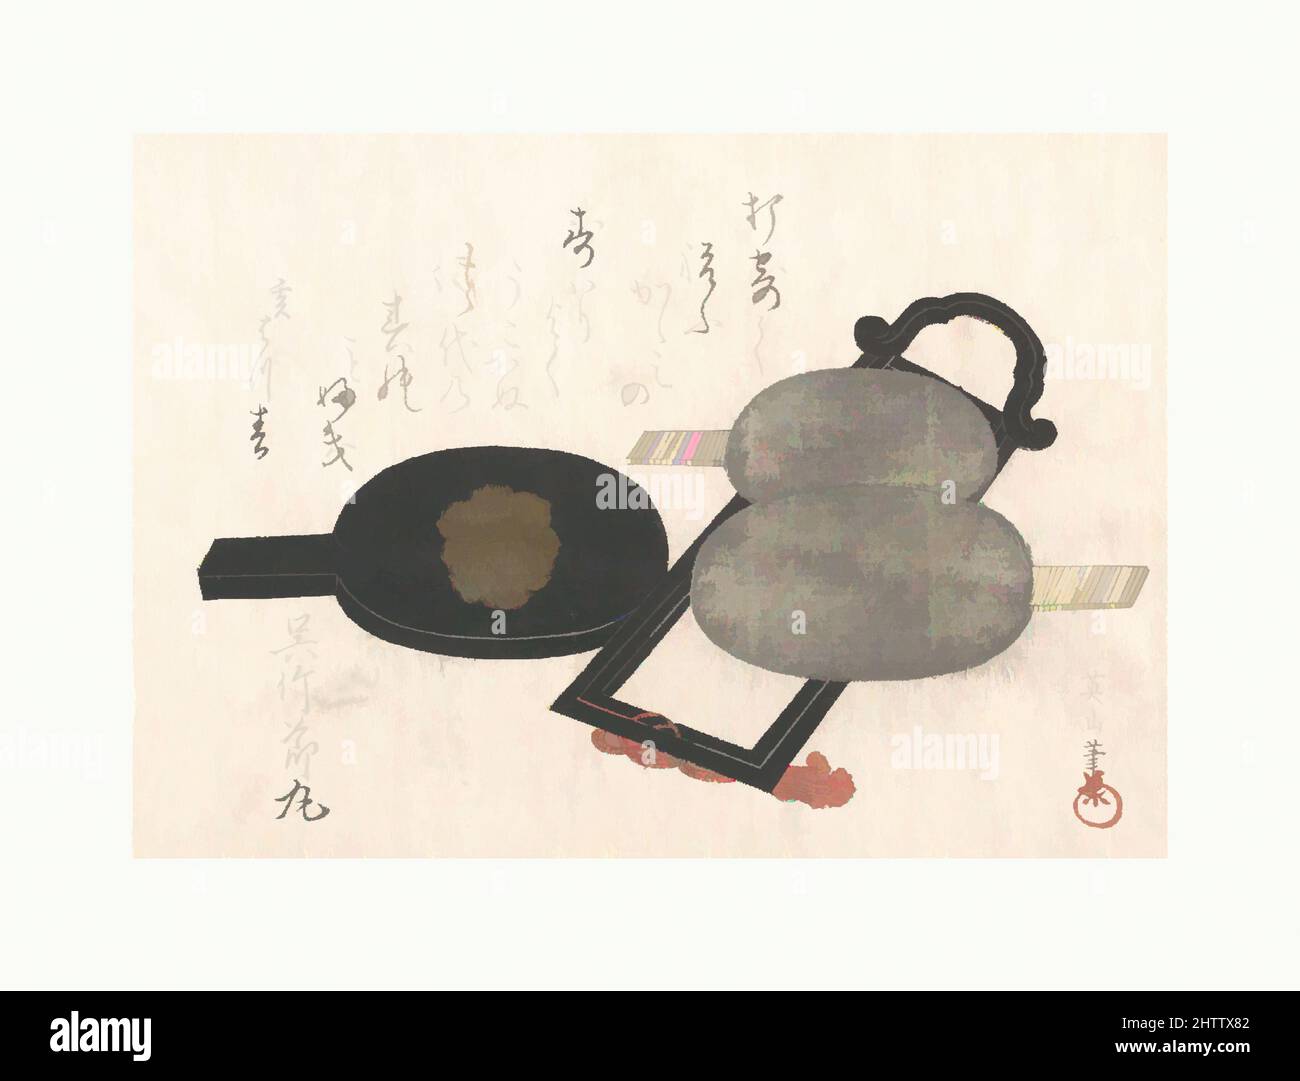 Art inspiré par Mirror and Stand, époque Edo (1615–1868), probablement 1815, Japon, imprimé polychrome sur bois (surimono) ; encre et couleur sur papier, 5 x 7 1/16 po. (12,7 x 17,9 cm), Prints, Kikugawa Eizan (japonais, 1787–1867, oeuvres classiques modernisées par Artotop avec une touche de modernité. Formes, couleur et valeur, impact visuel accrocheur sur l'art émotions par la liberté d'œuvres d'art d'une manière contemporaine. Un message intemporel qui cherche une nouvelle direction créative. Artistes qui se tournent vers le support numérique et créent le NFT Artotop Banque D'Images